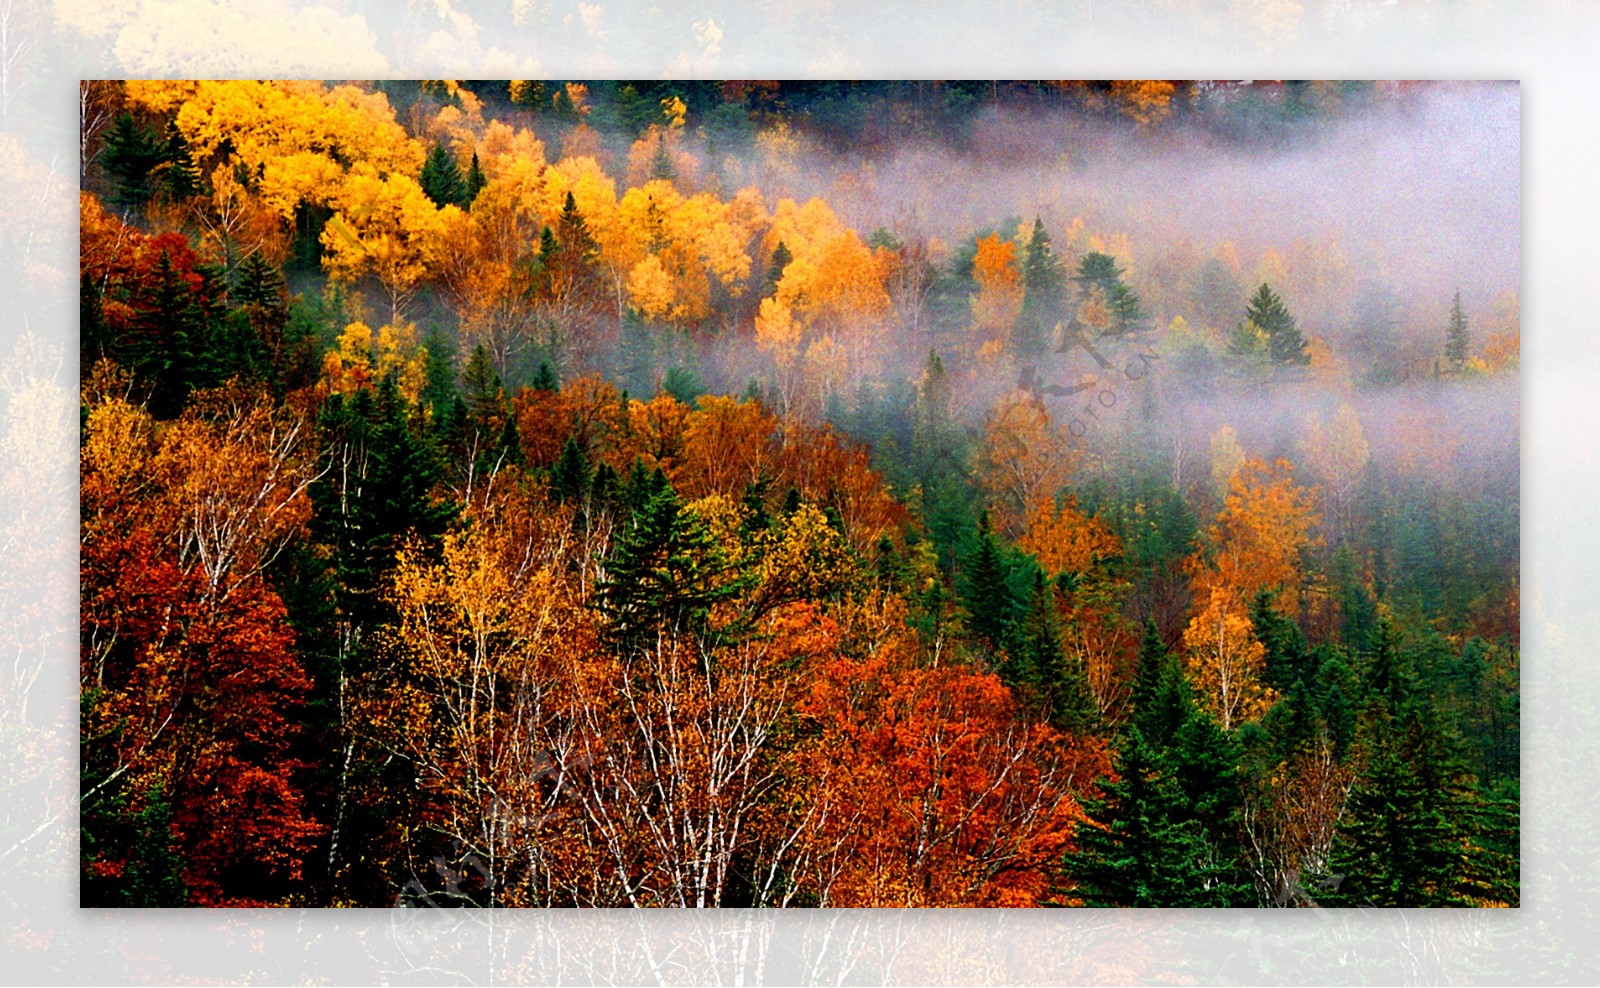 秋季森林风景图片